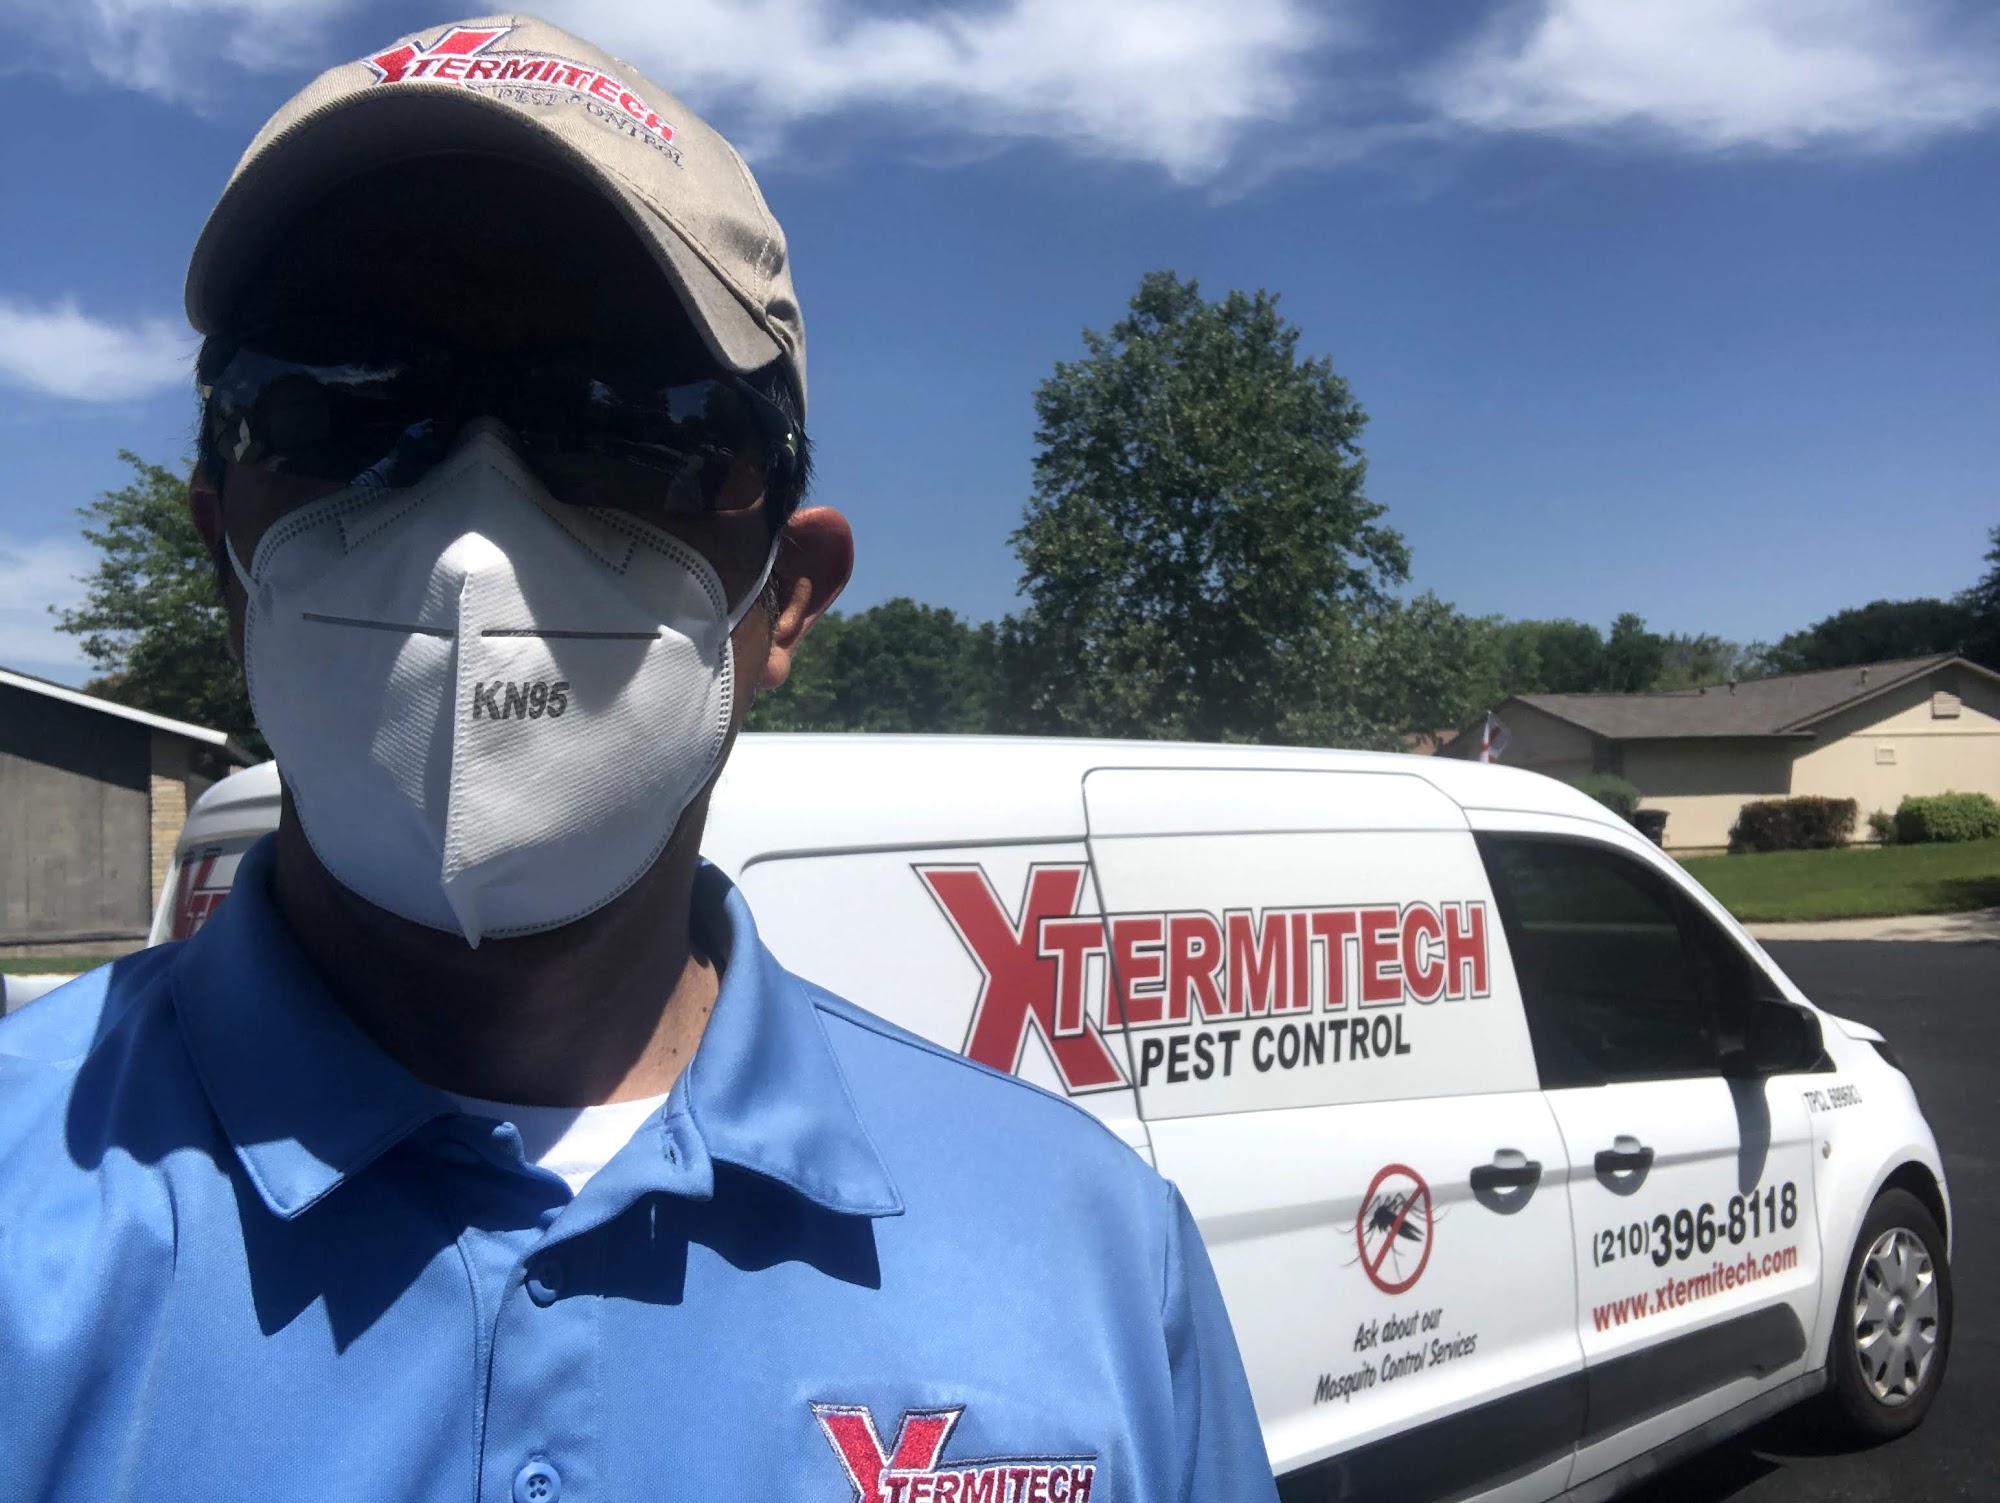 XTERMITECH Pest Control, LLC